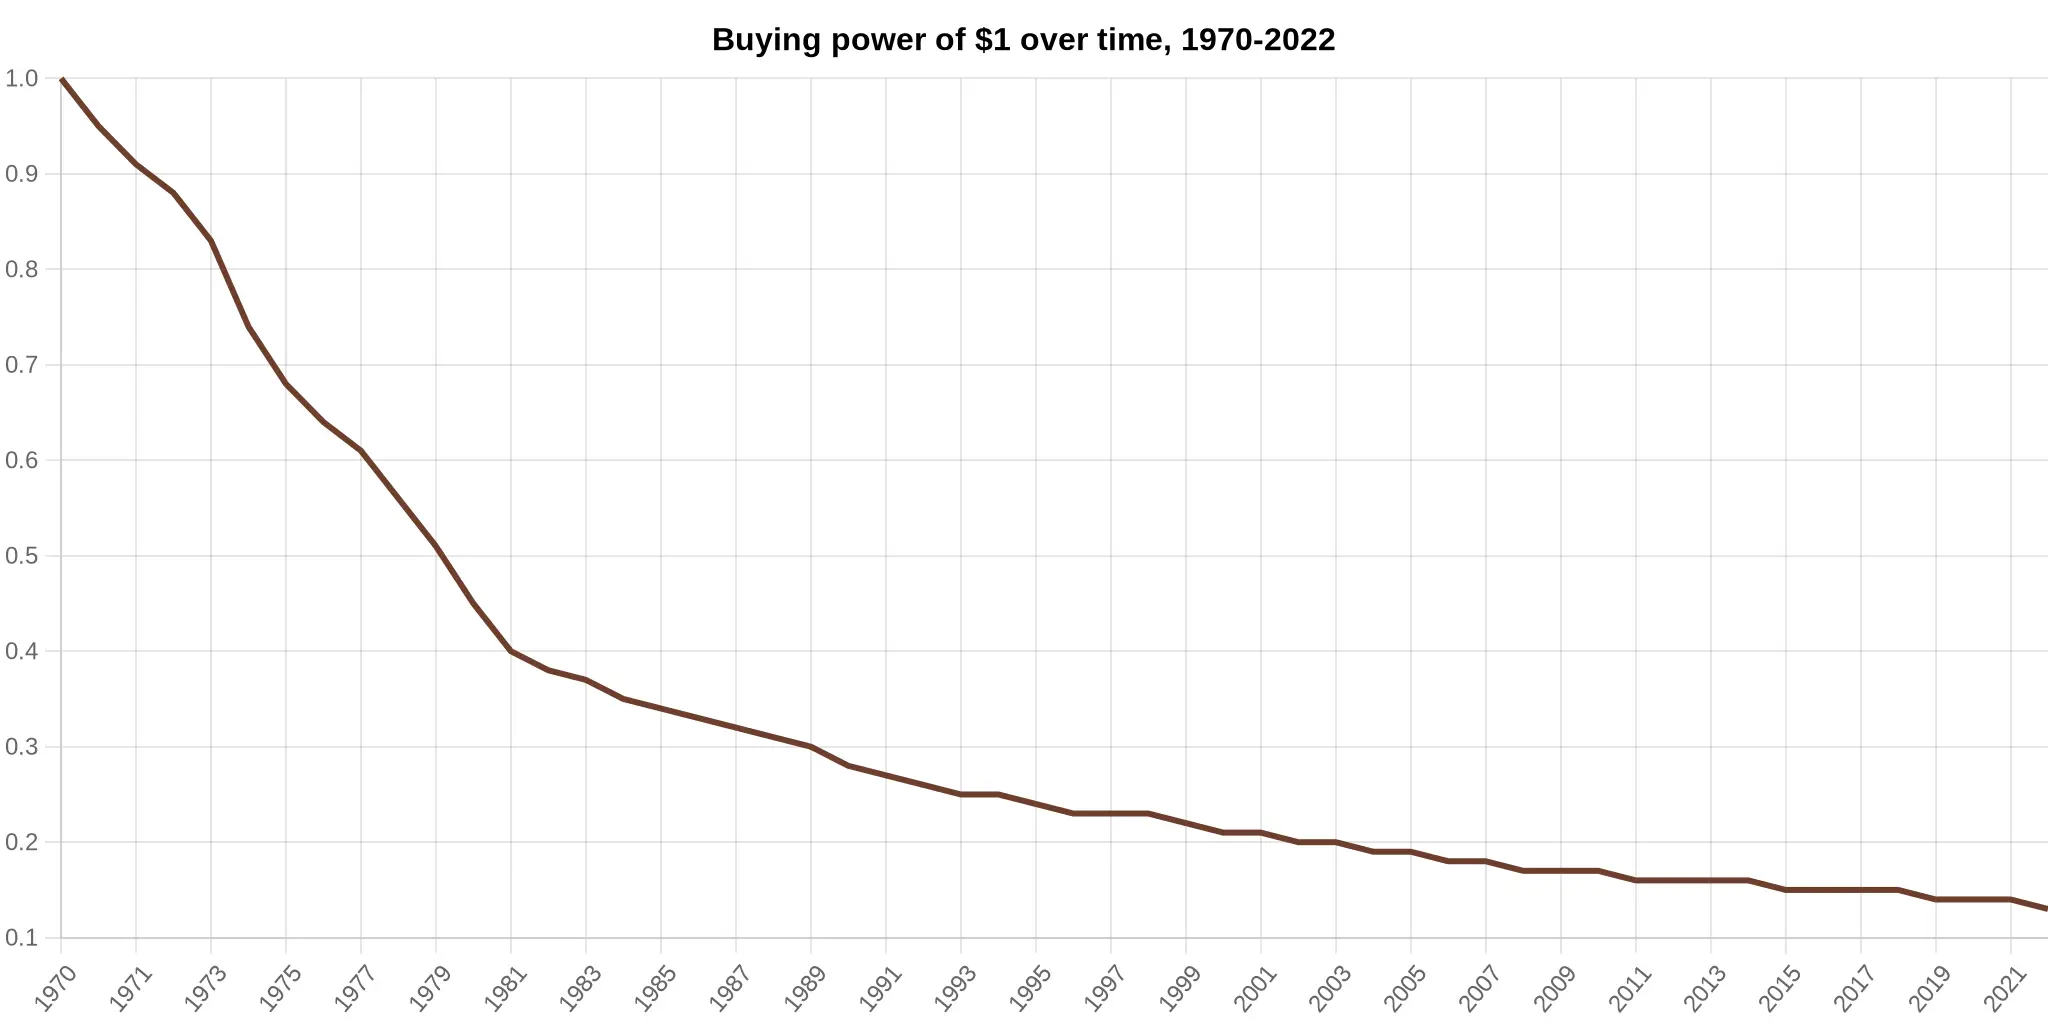 Il grafico del potere d'acquisto mostra una decrescita costante dal 1970